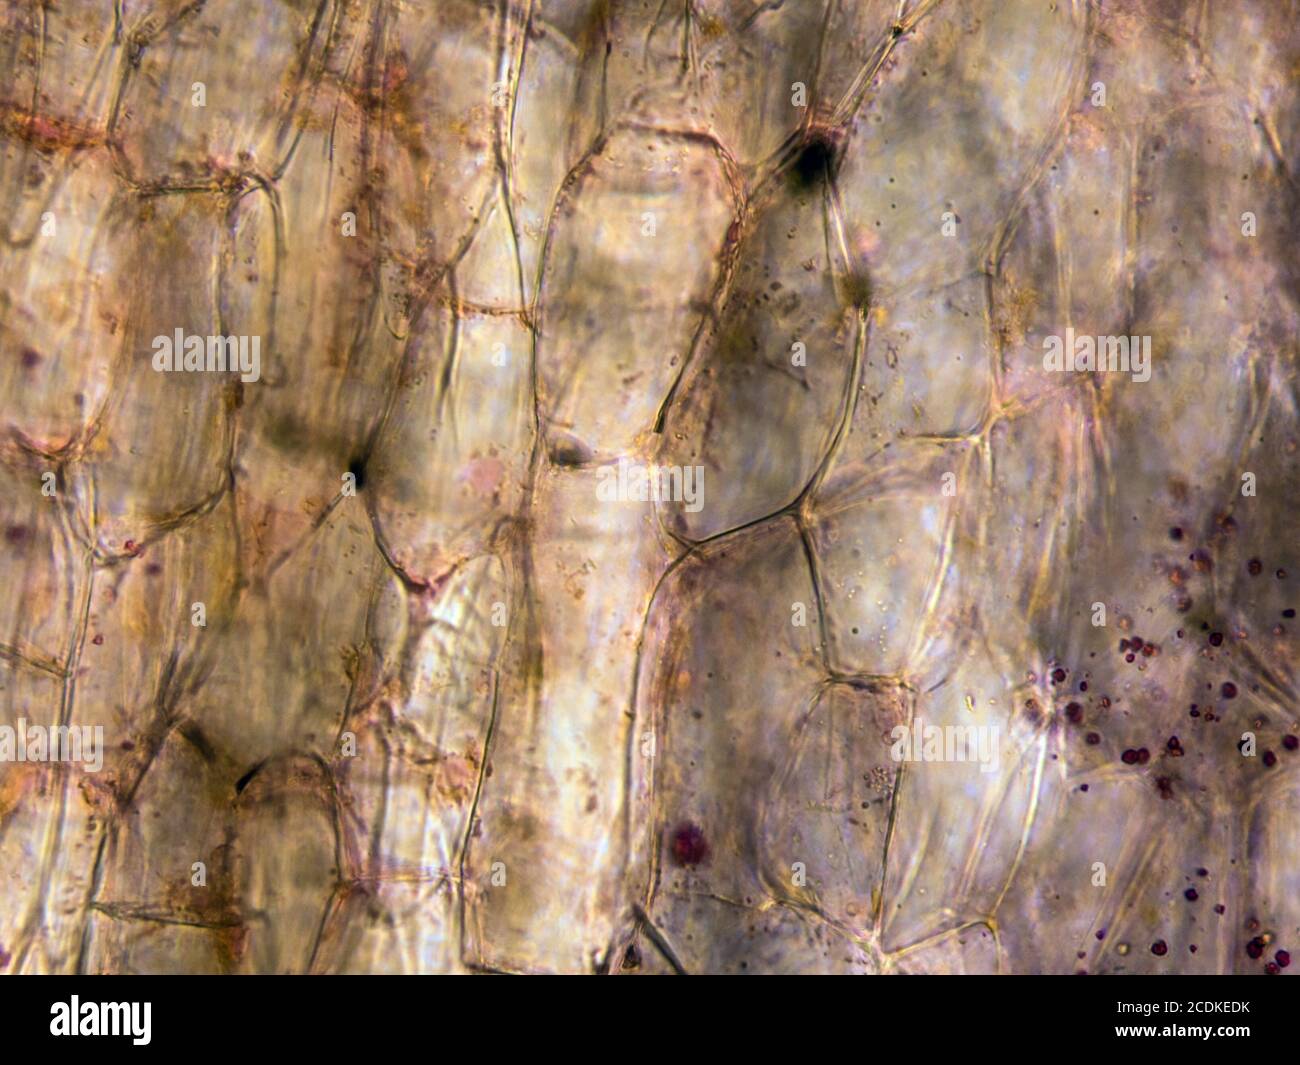 Vista microscópica de las células de raíz de zanahoria. Sección transversal. Microscopio compuesto óptico. Campo claro. Objetivo 40x. Foto de stock